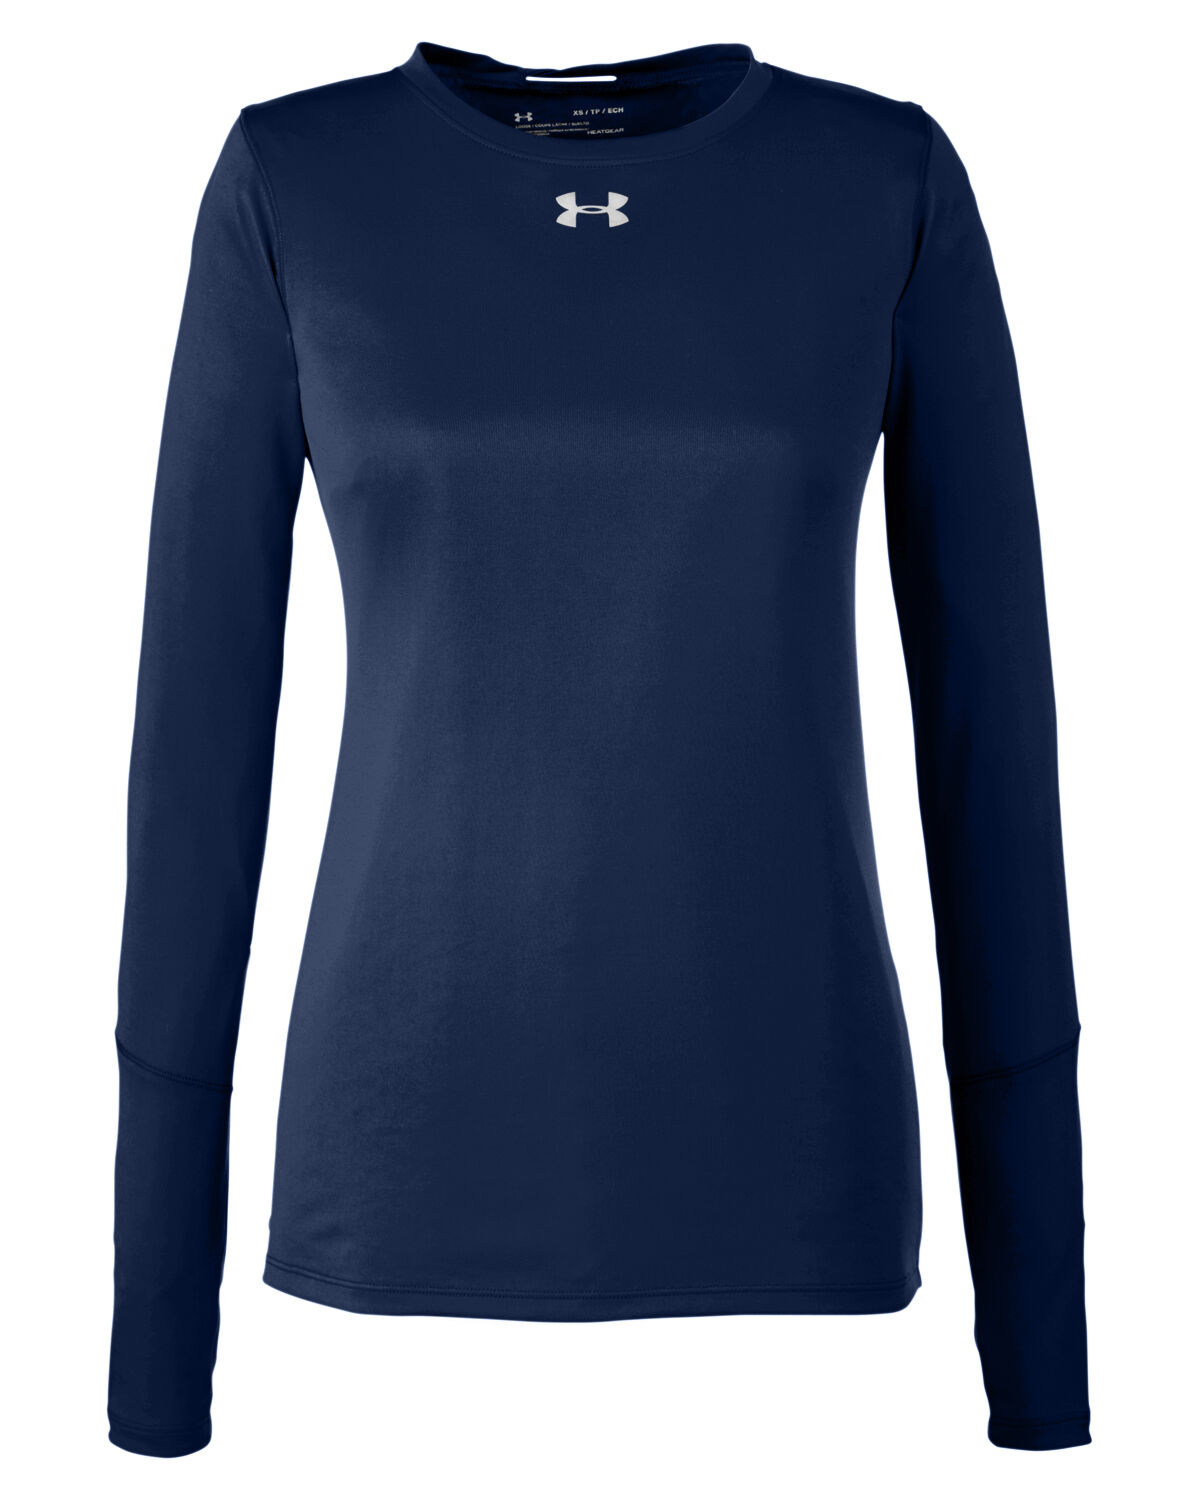 https://www.drivemerch.com/wp-content/uploads/2021/02/branded-under-armour-womens-long-sleeve-locker-t-shirt-2-0-midnight-navy-metallic-silver.jpg